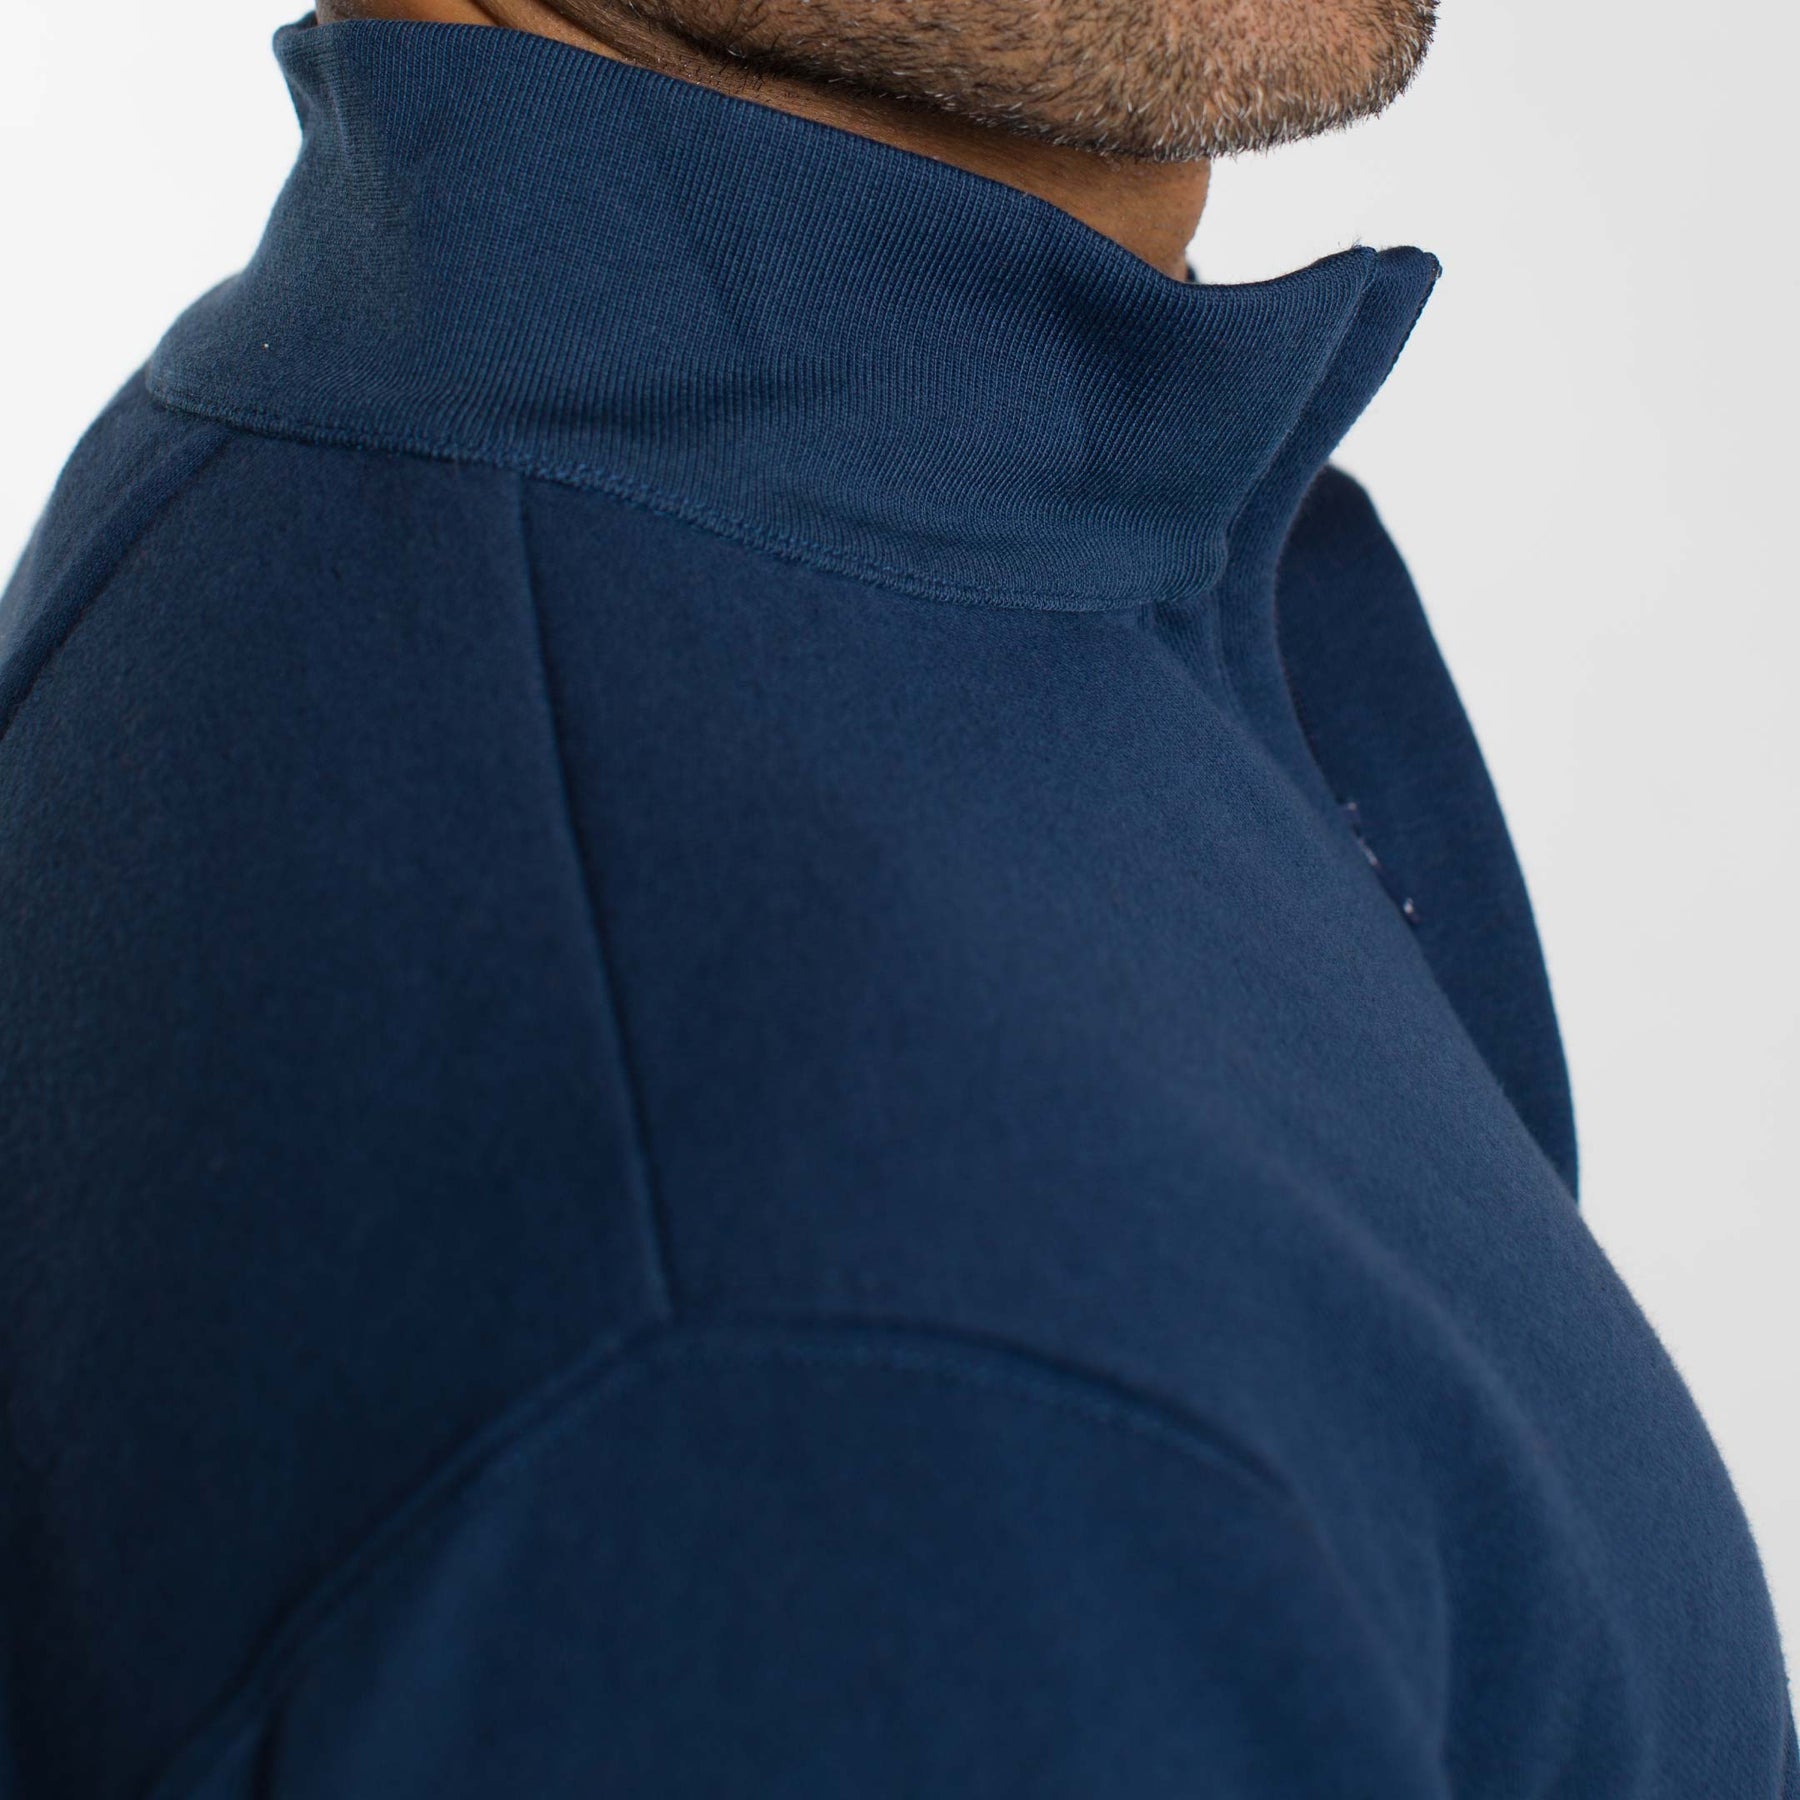 Ash & Erie Navy Quarter-Zip Sweatshirt for Short Men Navy / L